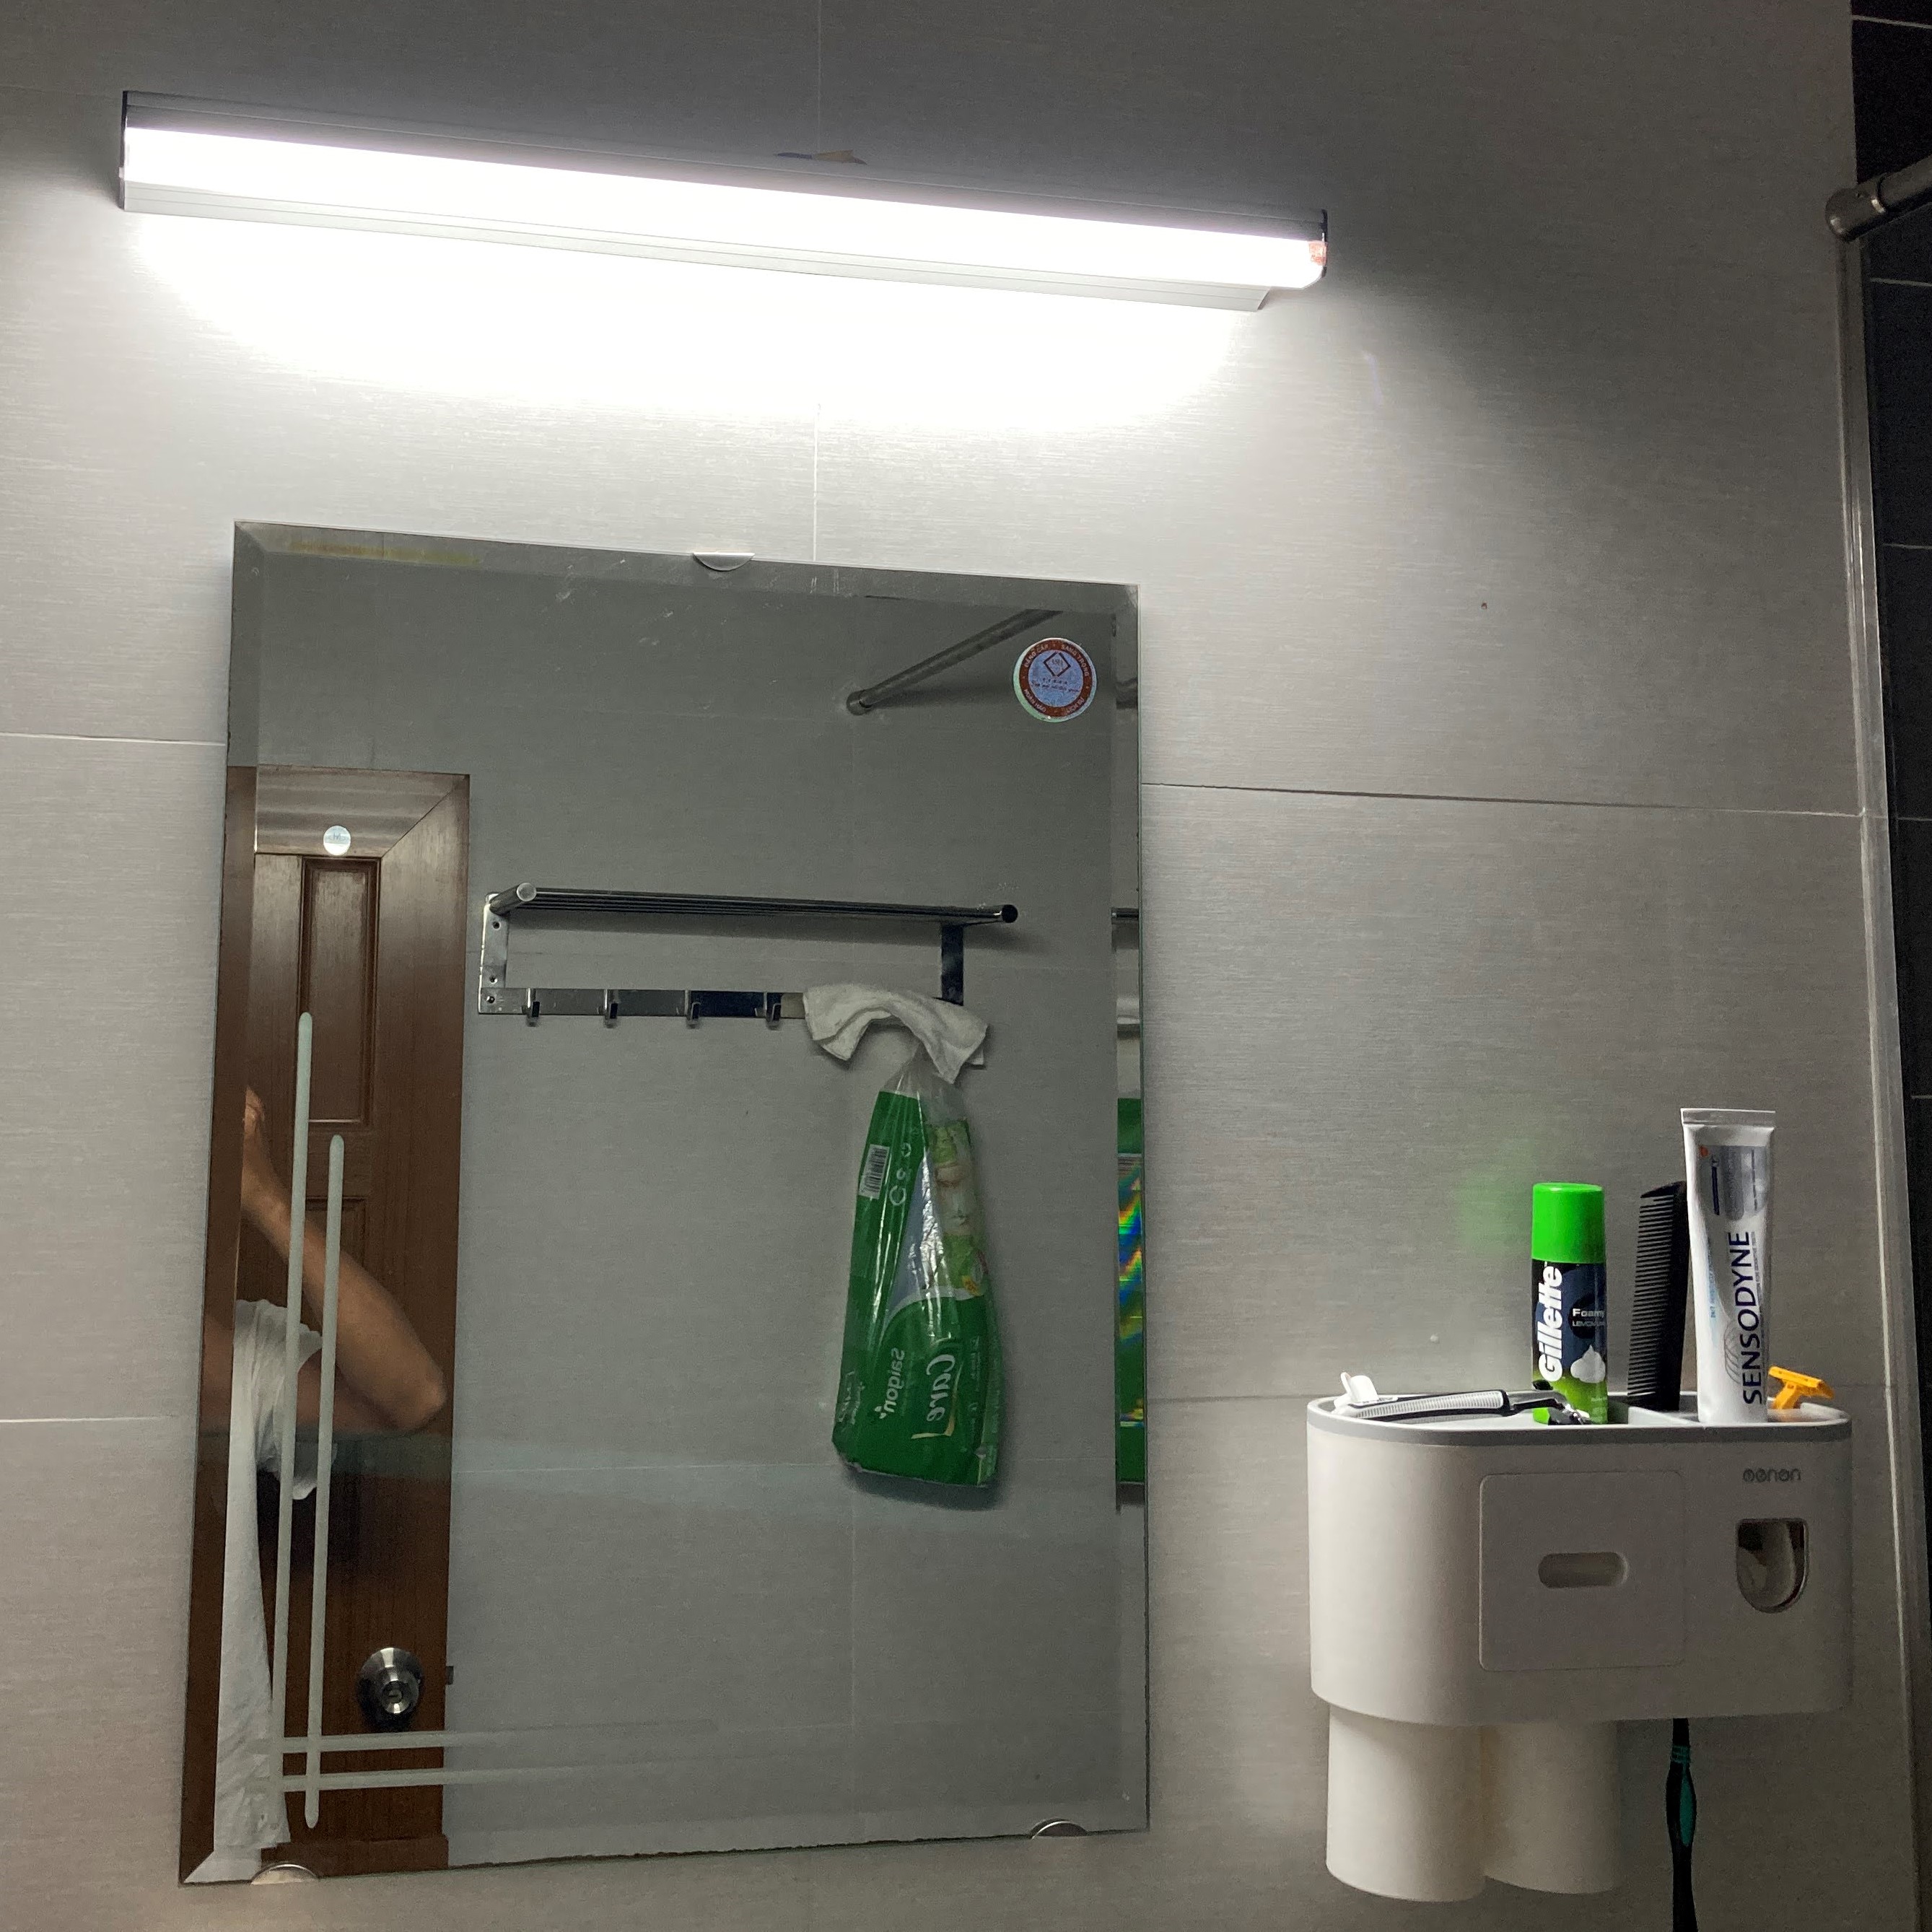 Đèn chiếu gương nhà tắm Panasonic đã được nâng cấp với công nghệ tiên tiến nhất, mang đến ánh sáng đồng đều và tự nhiên hơn bao giờ hết. Với kiểu dáng tinh tế và sang trọng, đèn chiếu gương này sẽ làm tăng thêm vẻ đẹp hoàn hảo cho không gian phòng tắm của bạn.